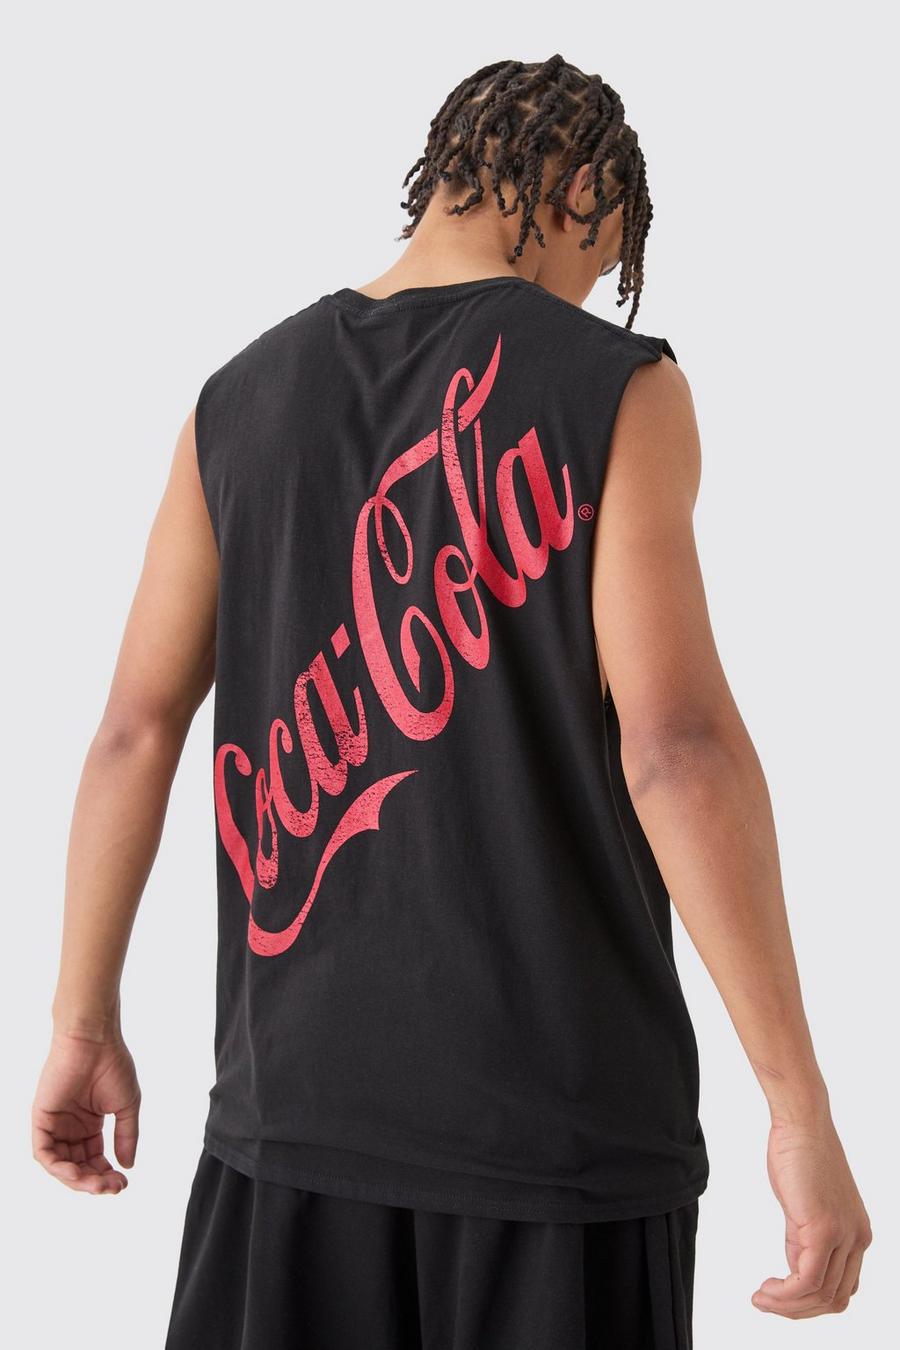 Canotta oversize ufficiale Coca Cola, Black